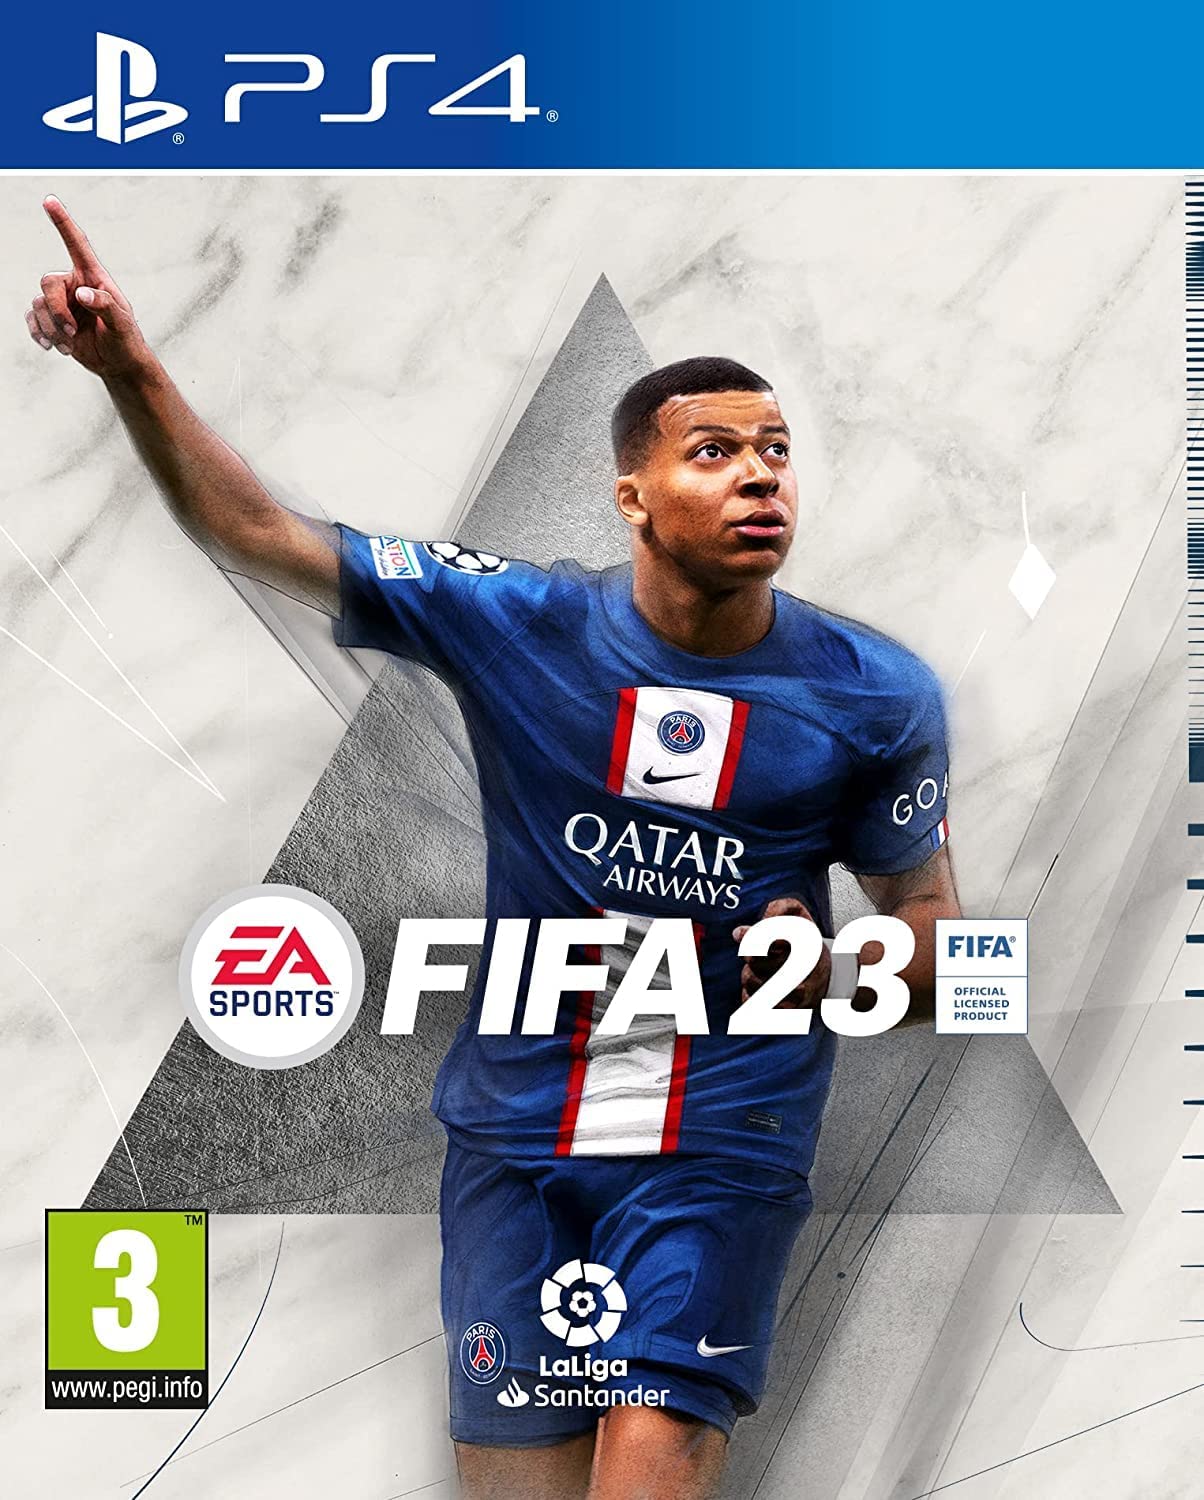 FIFA 23 será o maior de sempre e com melhorias ao nível gráfico